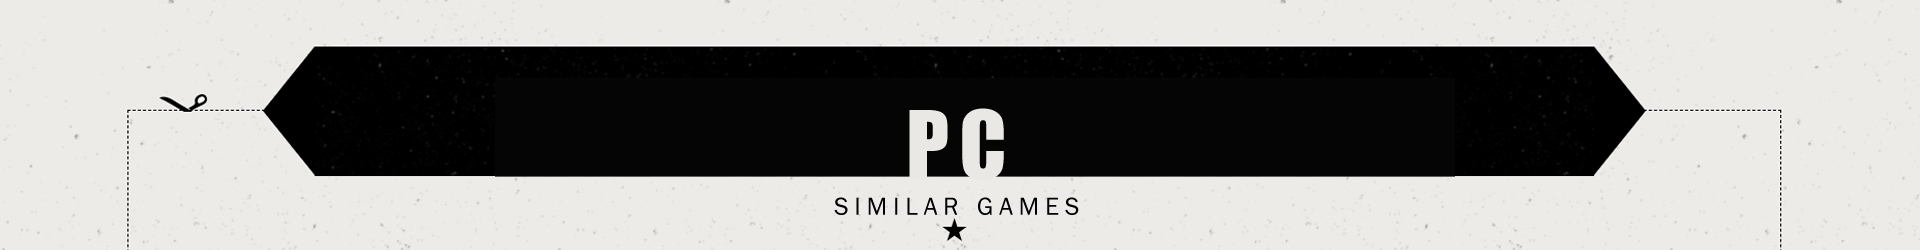 Juegos Postapocalípticos como Fallout en PC